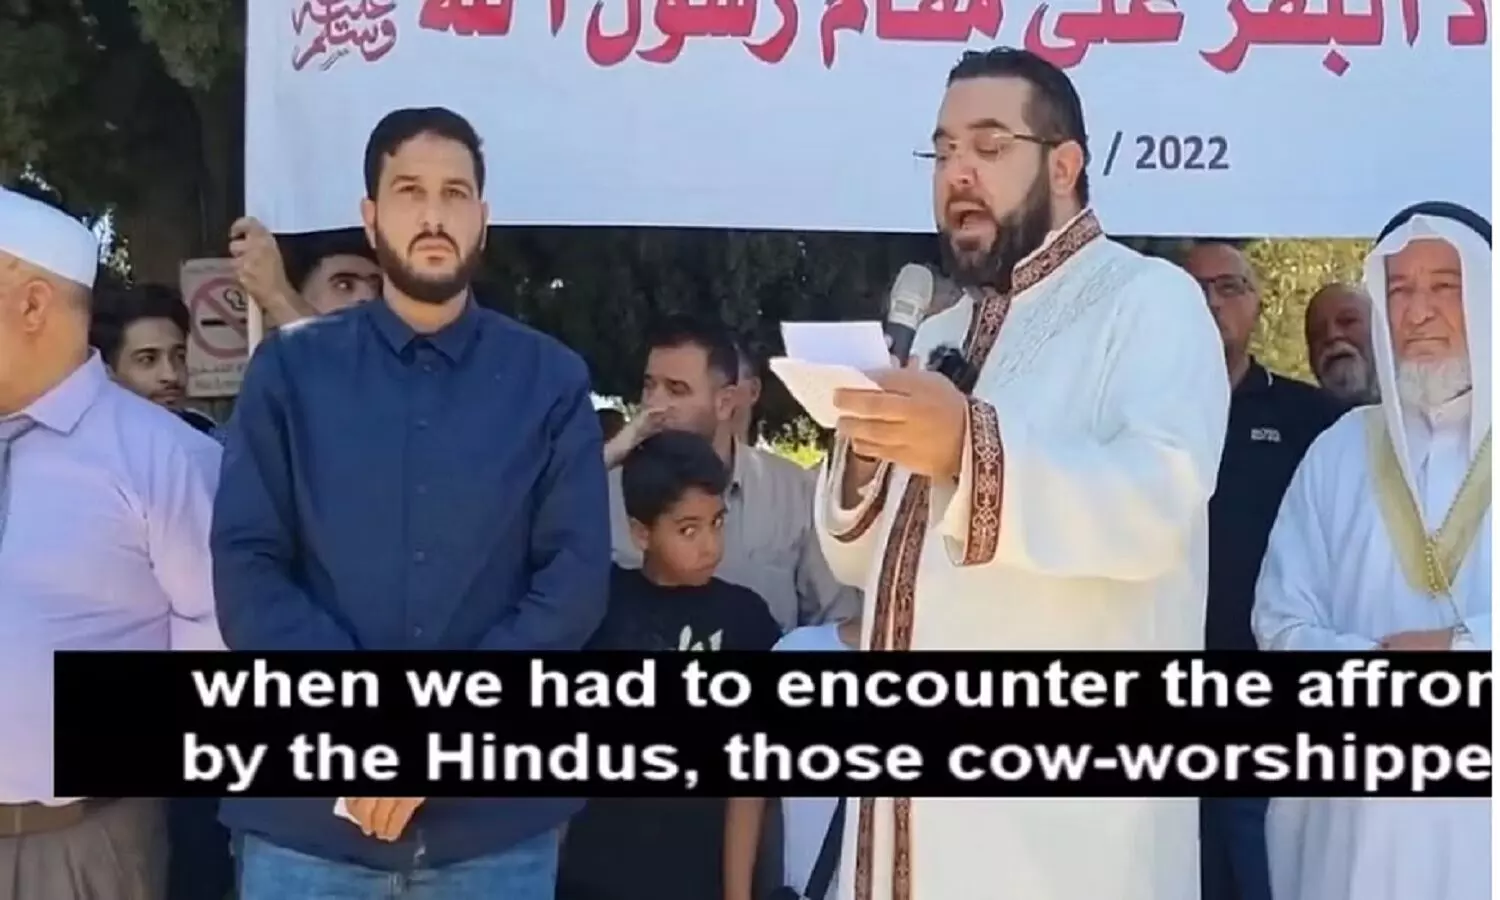 यरुशलम में हिंदुओं के खिलाफ जिहाद छेड़ने का आह्वान: एकजुट हों मुस्लिम देश, पाकिस्तान करे हमला